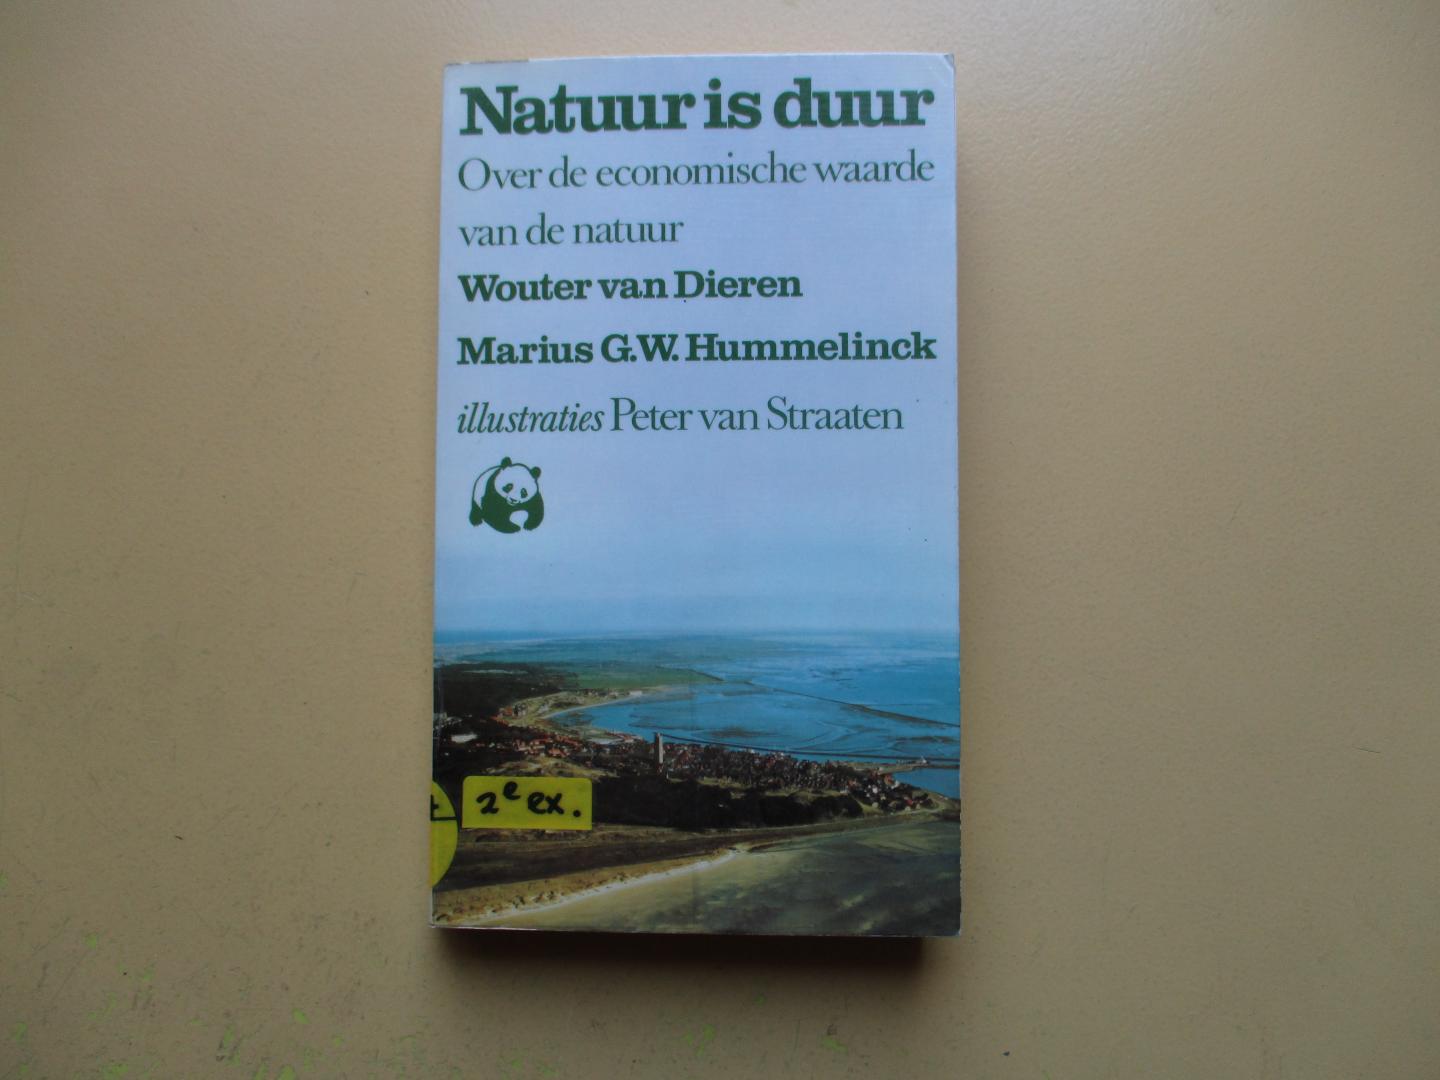 Dieren, Wouter van /  en Marius G. W. Hummelinck - Natuur is duur.  Over de economische waarde van de natuur